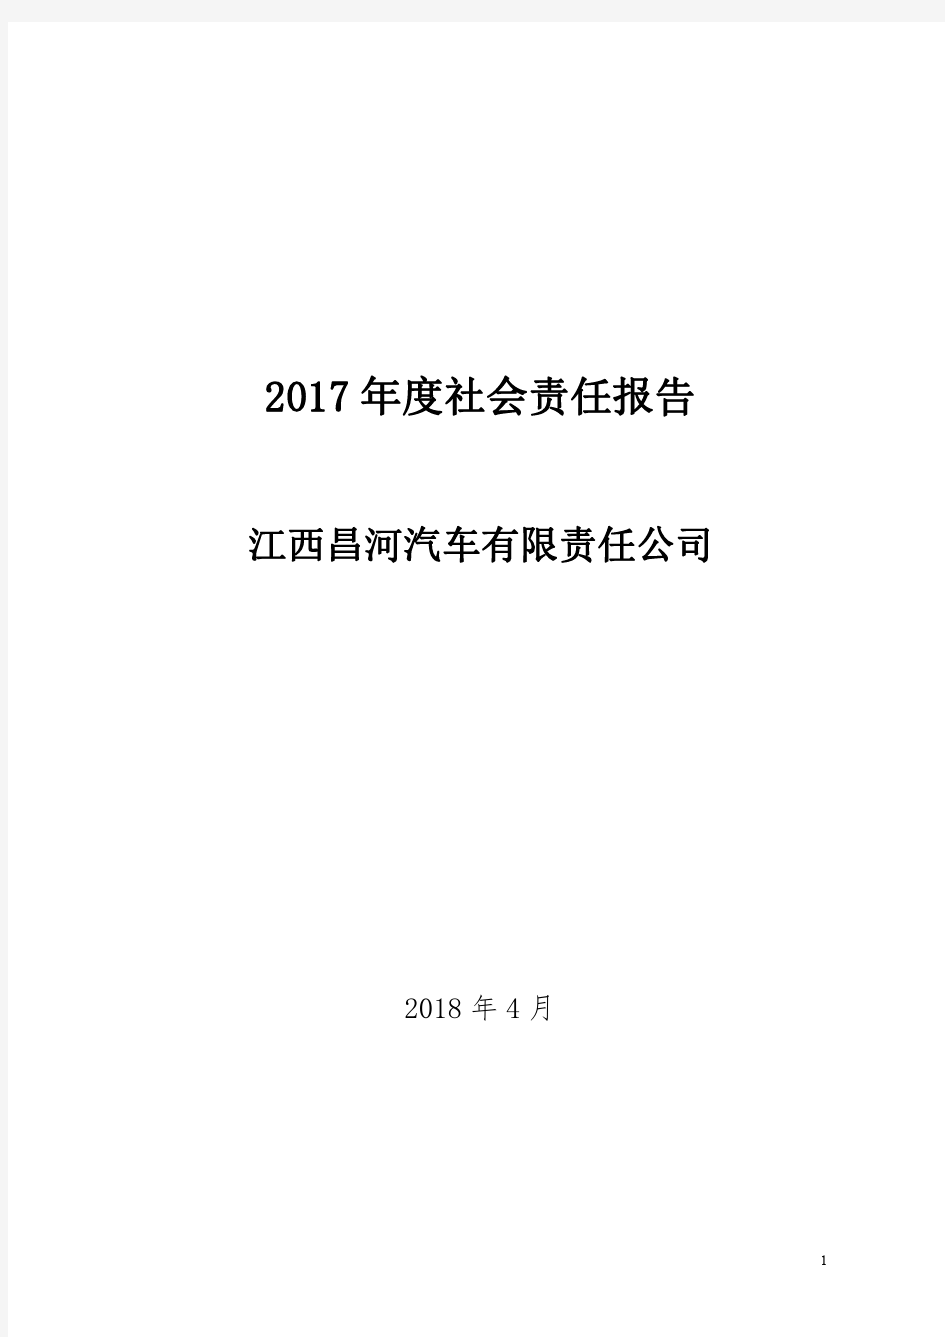 2017年度社会责任报告